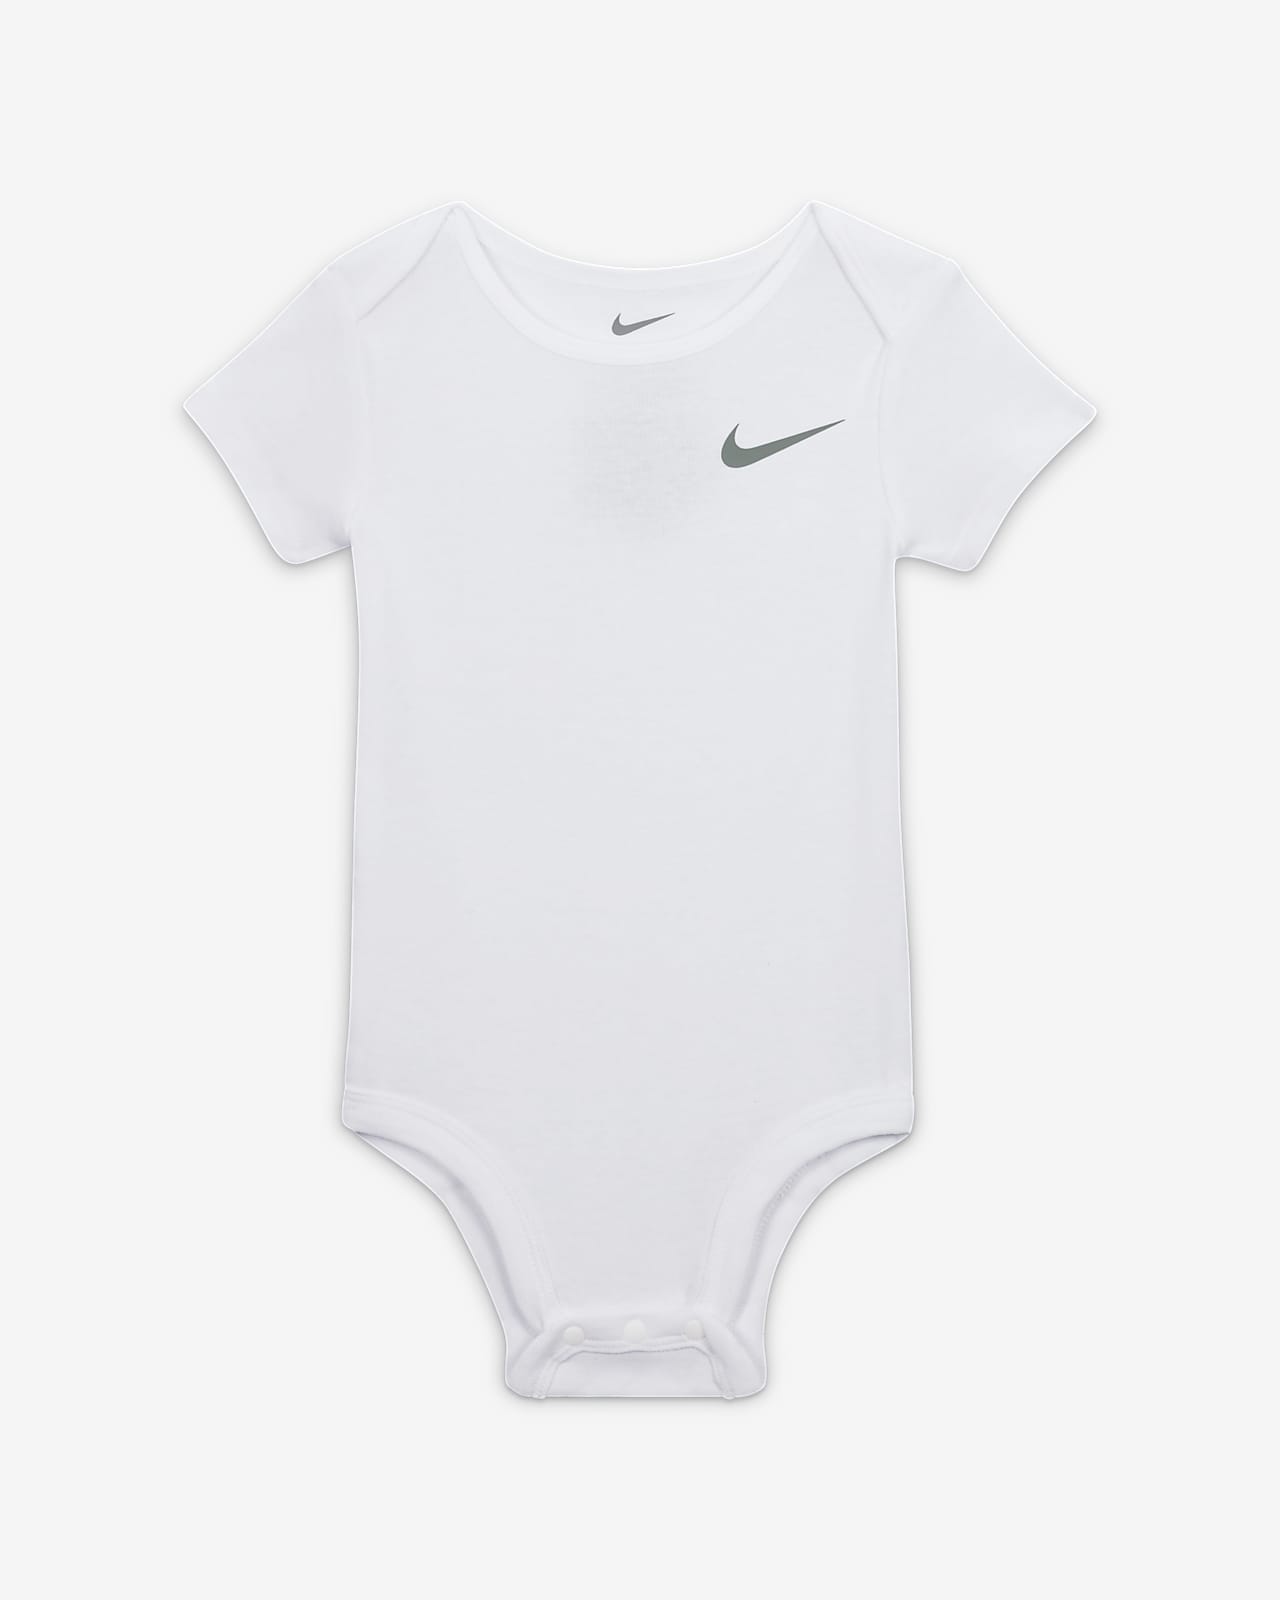 Nike Essentials Baby (12-24M) 3-Piece Bodysuit Set.